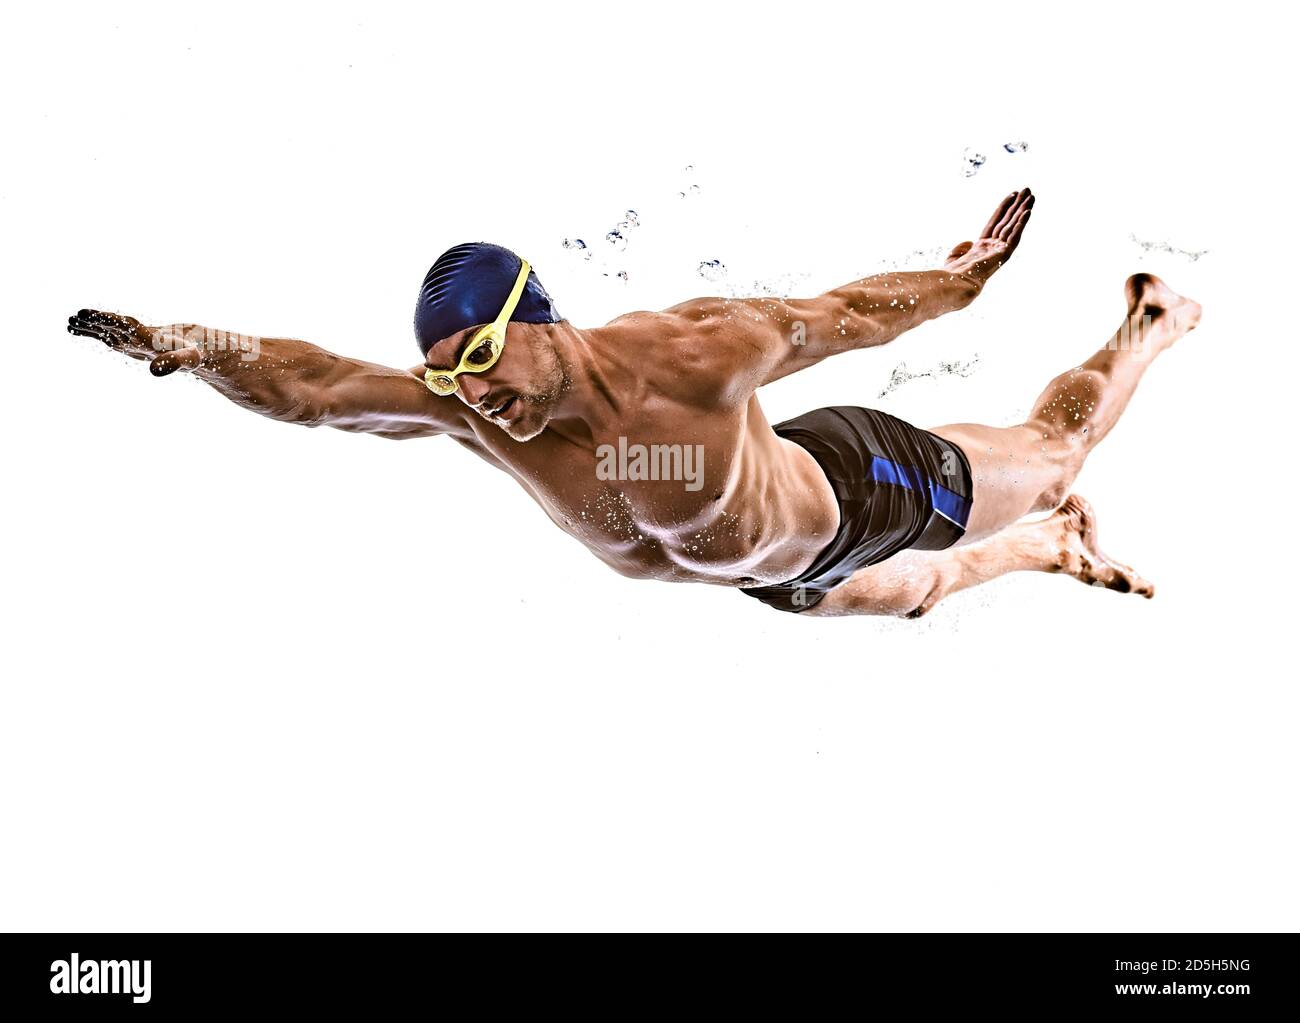 une silhouette de nageur de sport de type caucasien isolée sur fond blanc Banque D'Images